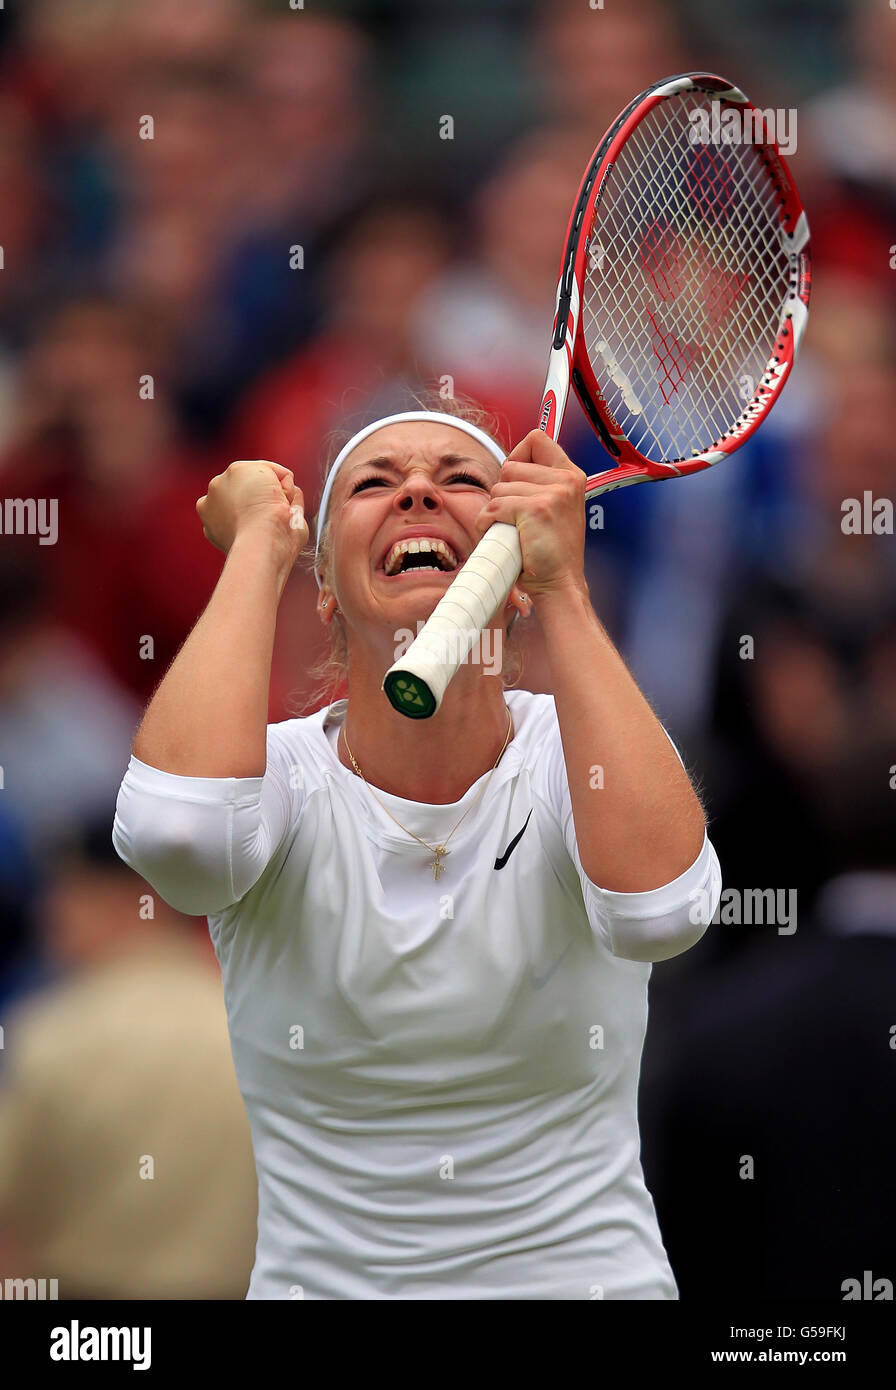 Sabine Lisicki, en Allemagne, célèbre la victoire contre Maria Sharapova, en Russie, lors du septième jour des championnats de Wimbledon 2012 au All England Lawn tennis Club, à Wimbledon. Banque D'Images